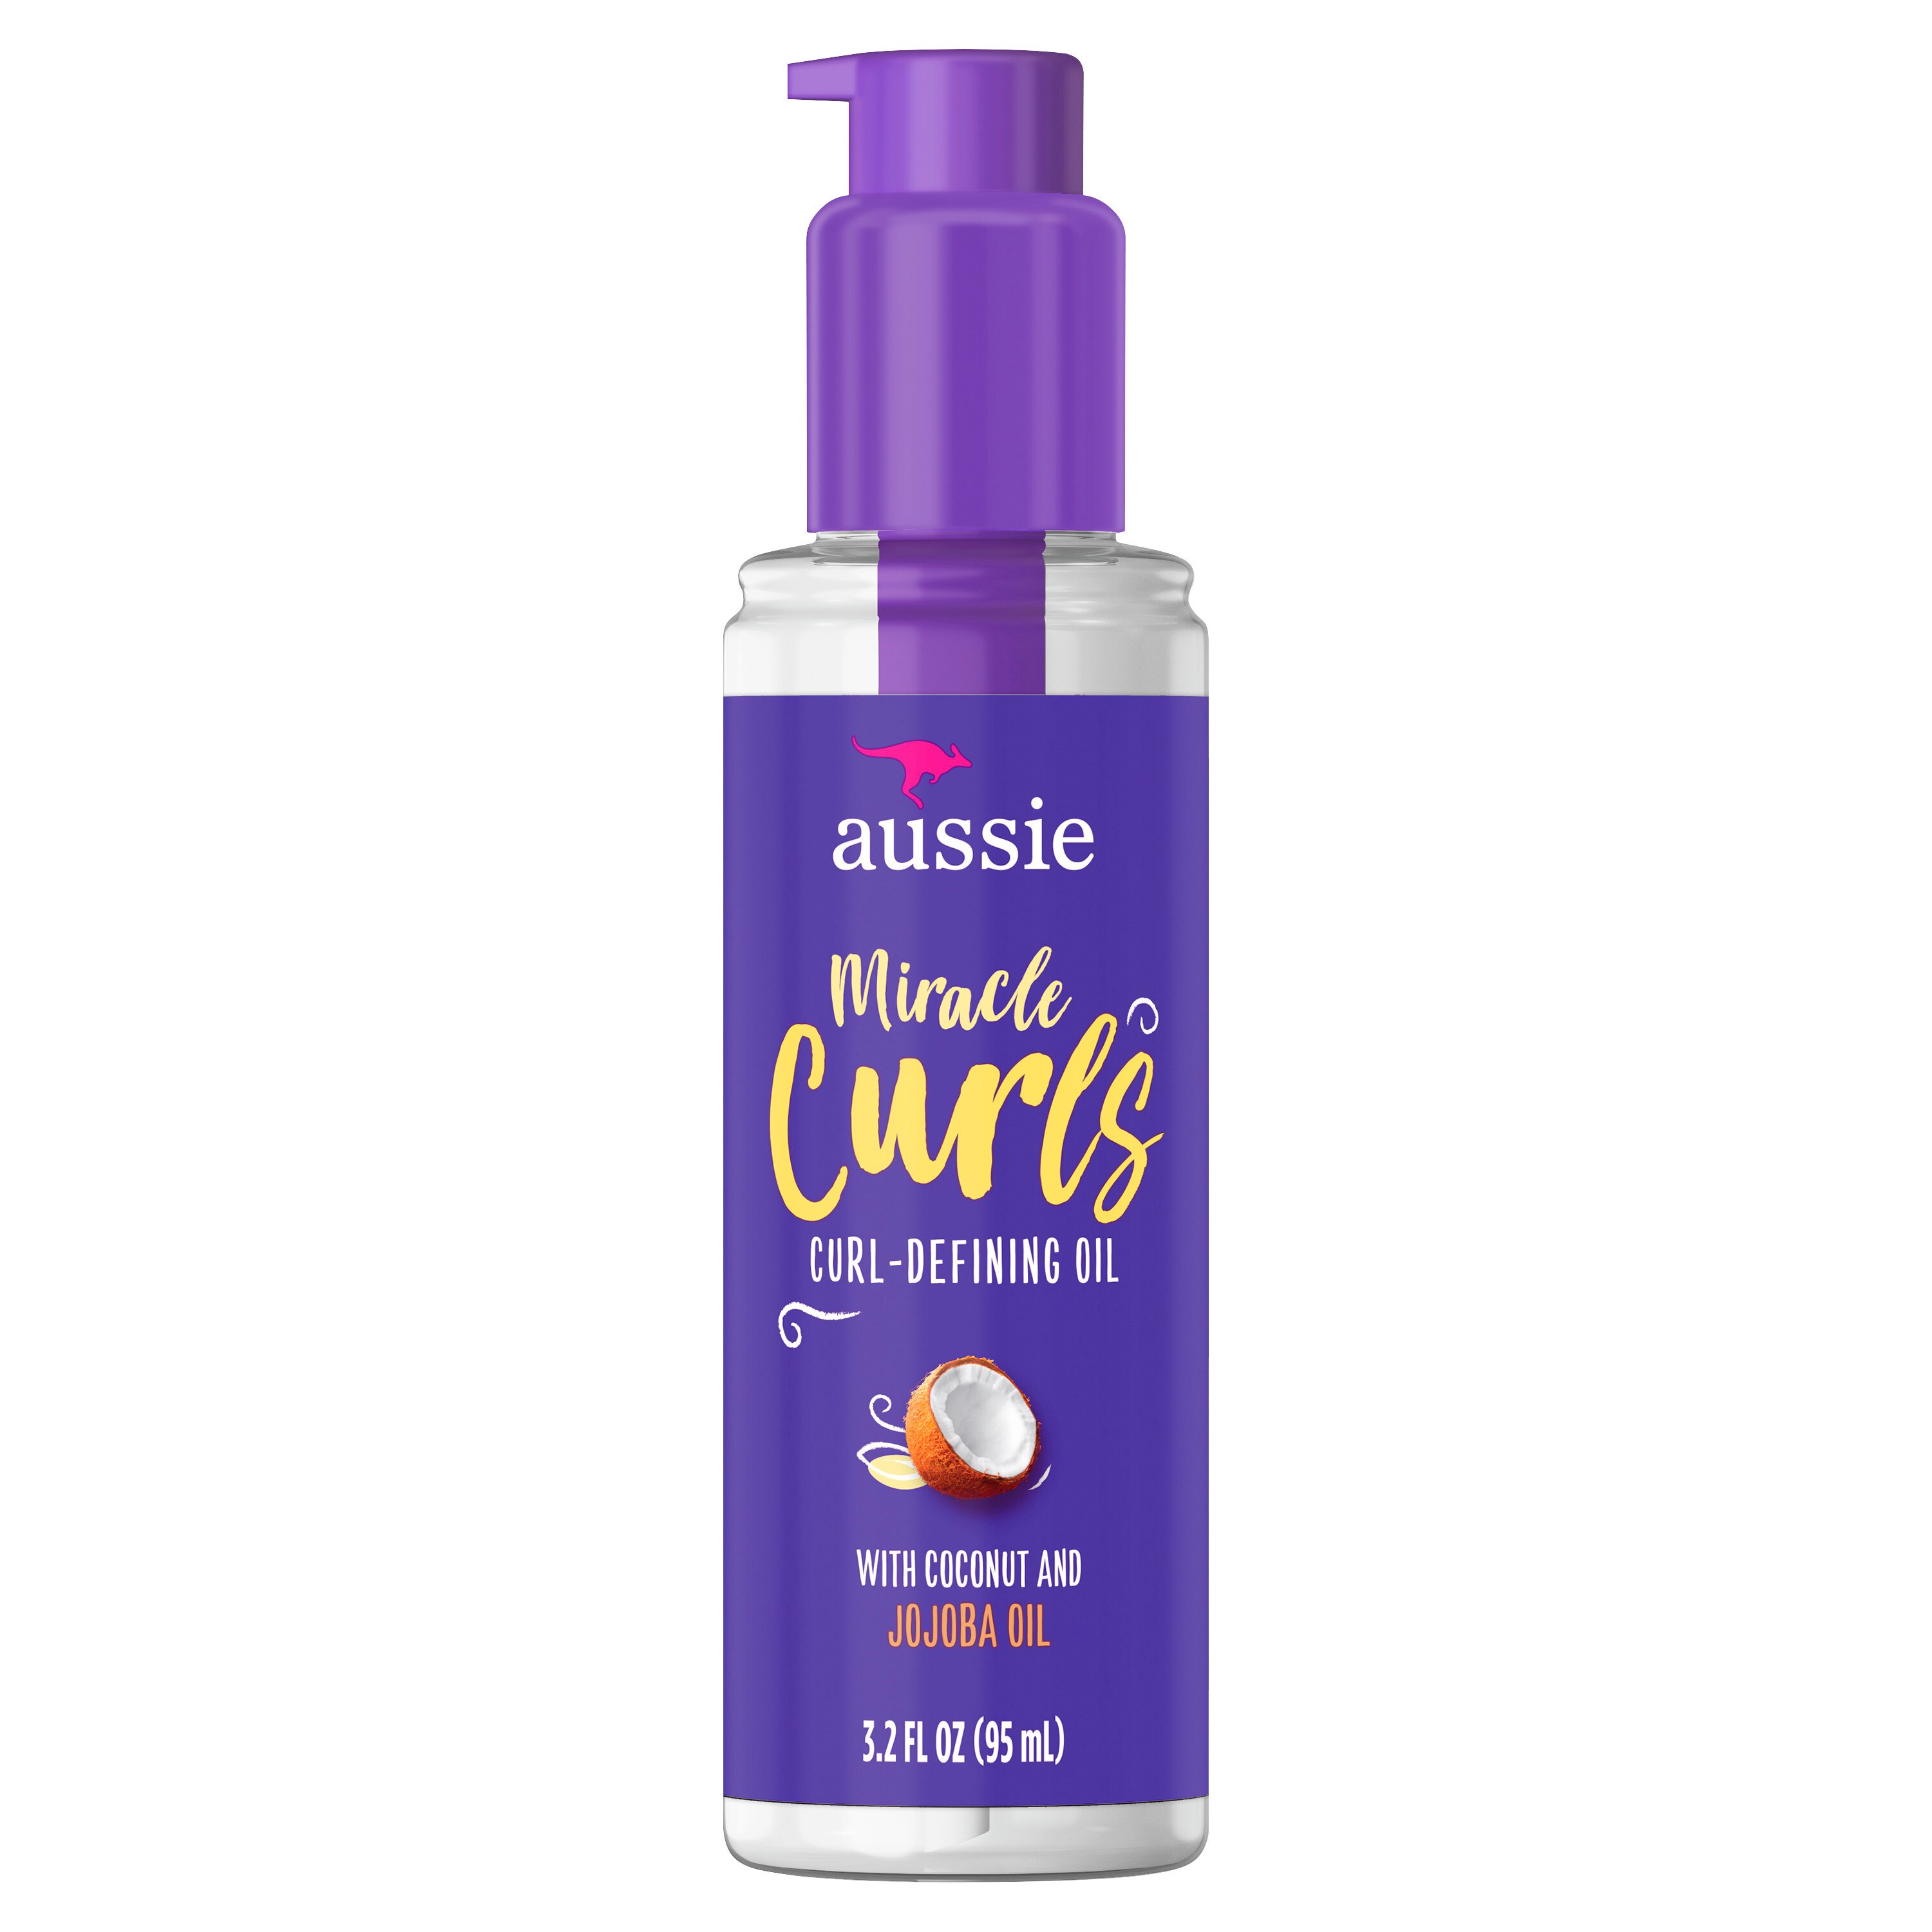 Aussie Miracle Curls Curl-Defining Oil - Tratamiento para el cabello con aceite de jojoba australiano, 3.2 oz